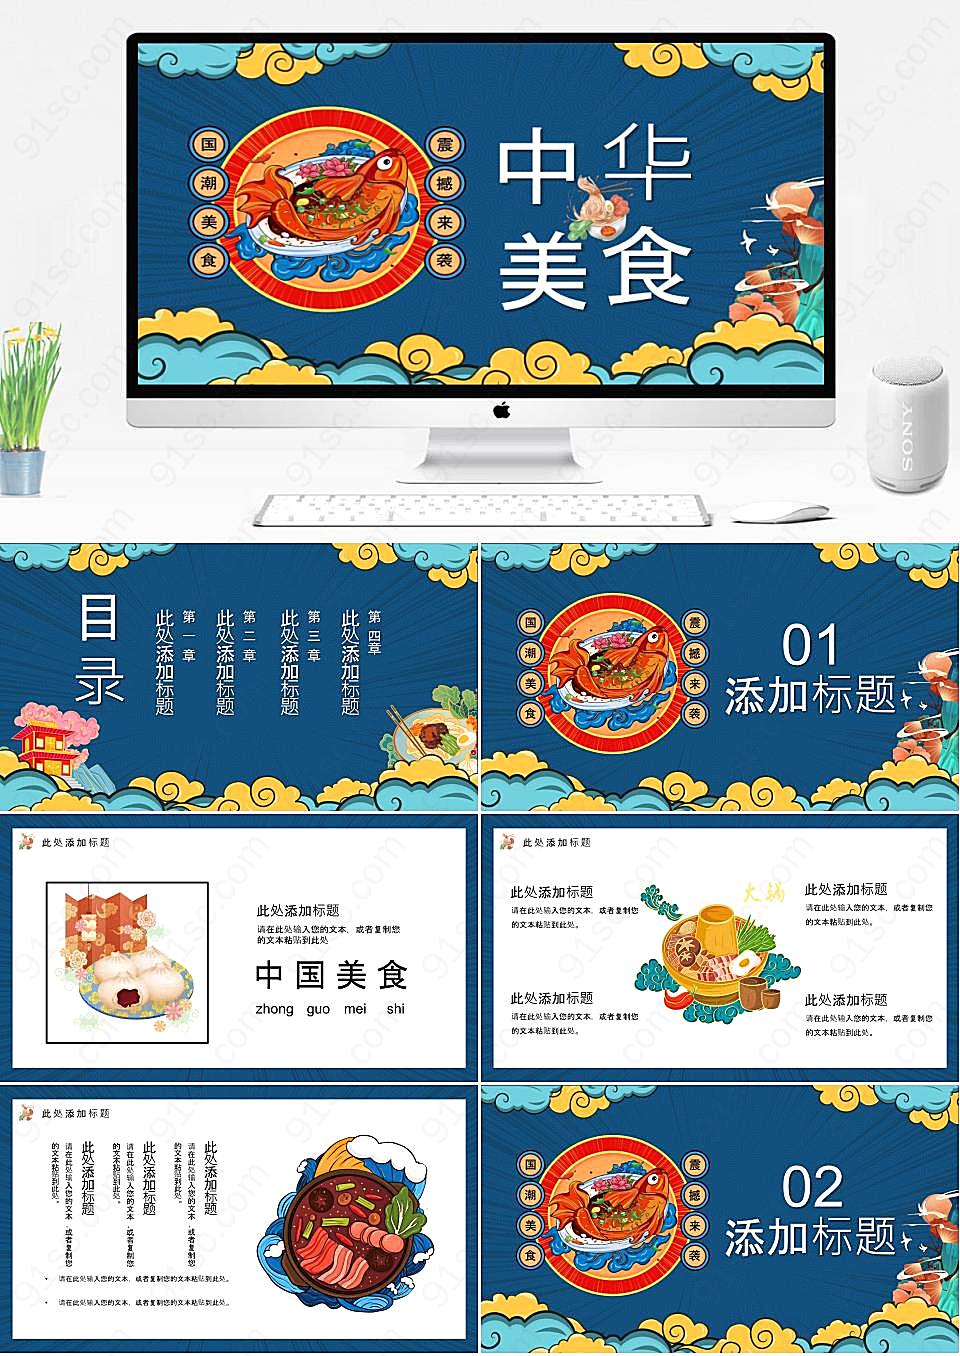 国潮美食的诱惑品味中华美食的独特风味餐饮美食PPT模板下载